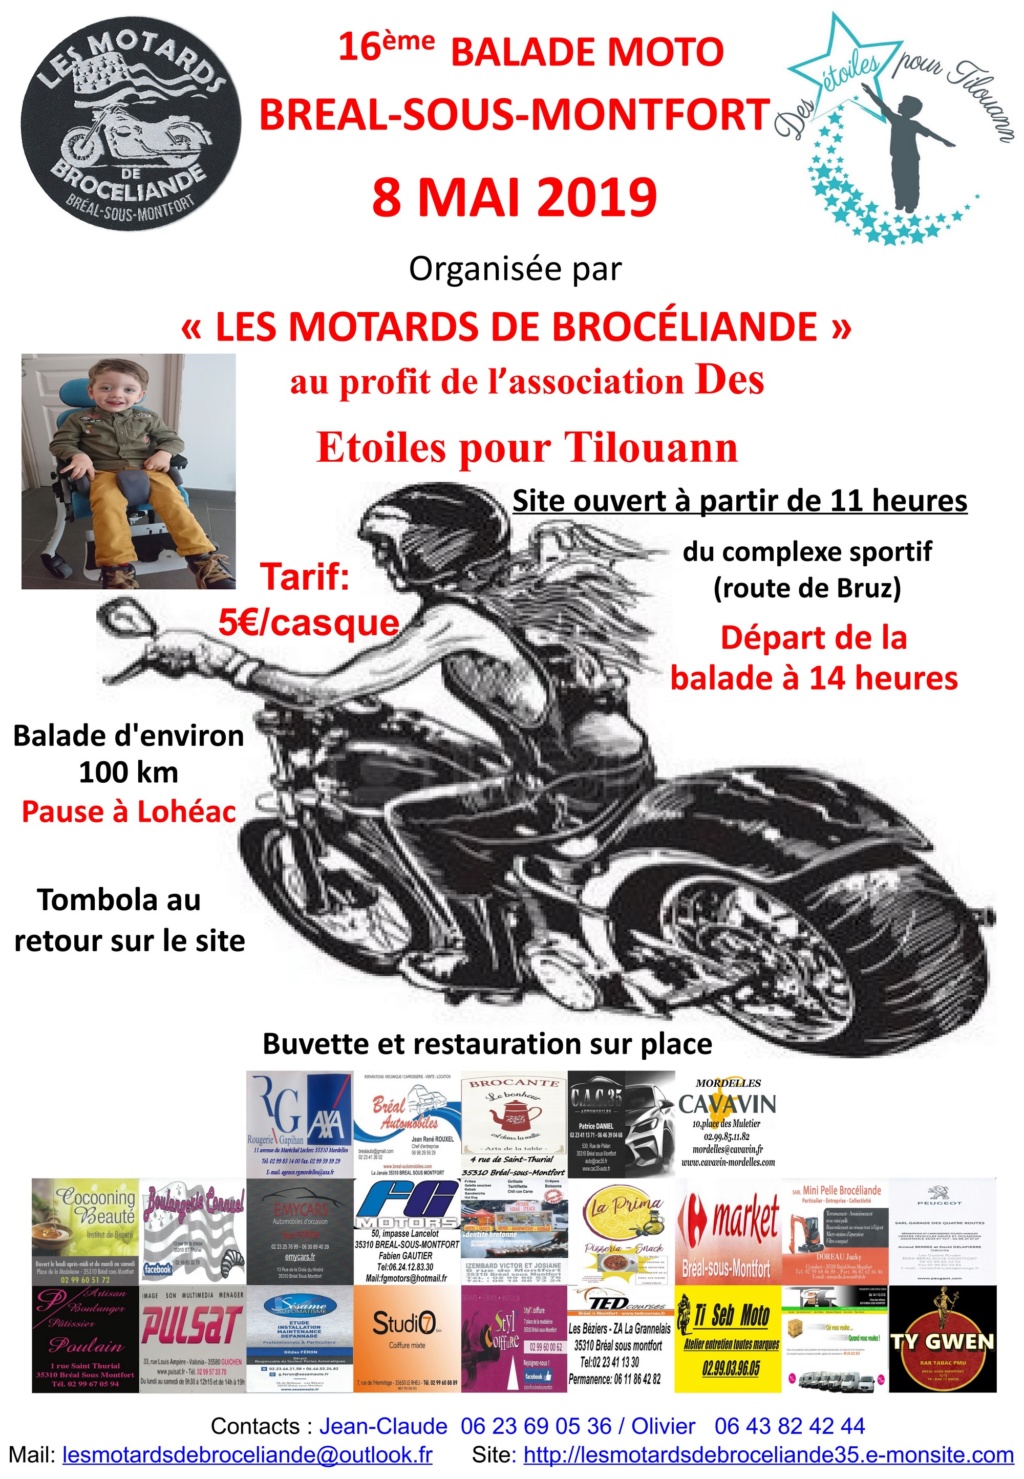 Balade Moto -  8 Mai 2019 - BREAL / SOUS / MONTFORT 5c8e0810